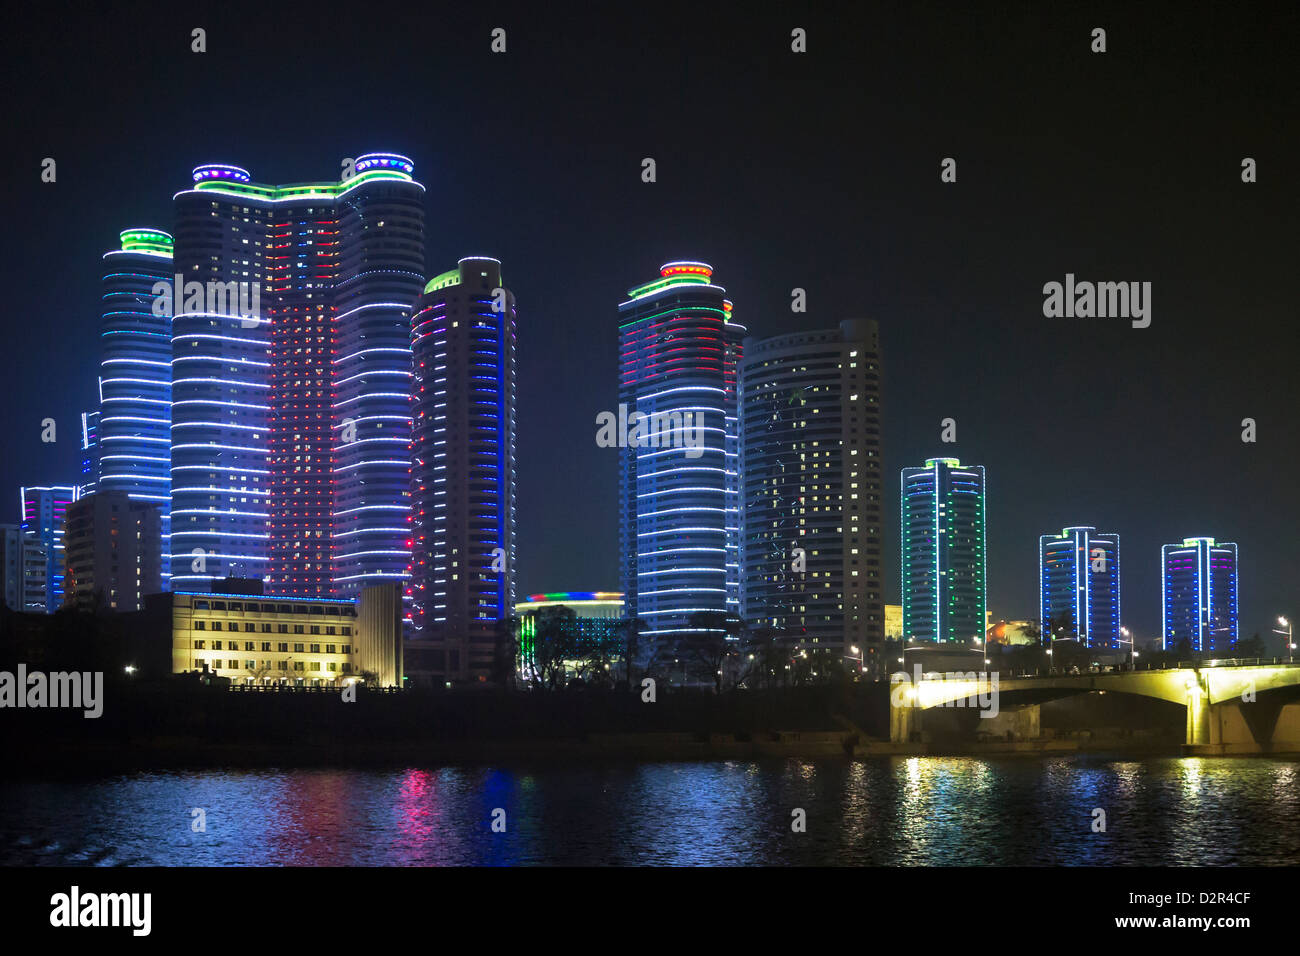 Appartements de centre-ville moderne illuminé la nuit, Pyongyang, République populaire démocratique de Corée (RPDC), la Corée du Nord, d'Asie Banque D'Images